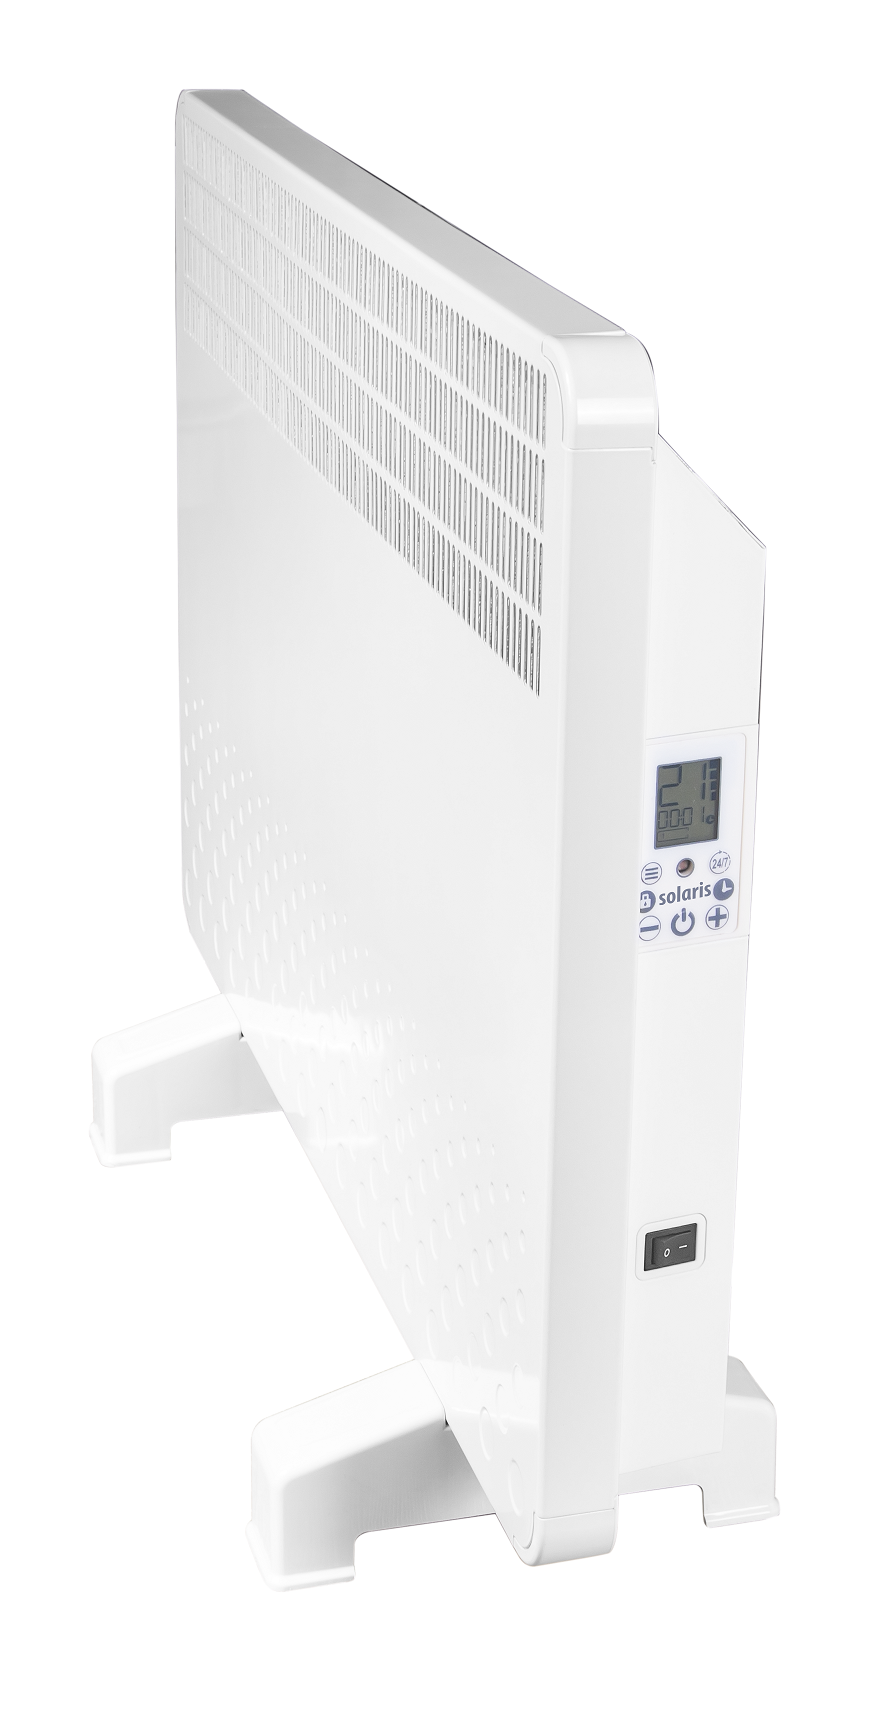 Convector electric de perete sau pardoseala Solaris KIP 2000 W, control electronic, Termostat de siguranta, termostat reglabil, IP 24, ERP 2018, pentru 24 mp de la fornello imagine noua